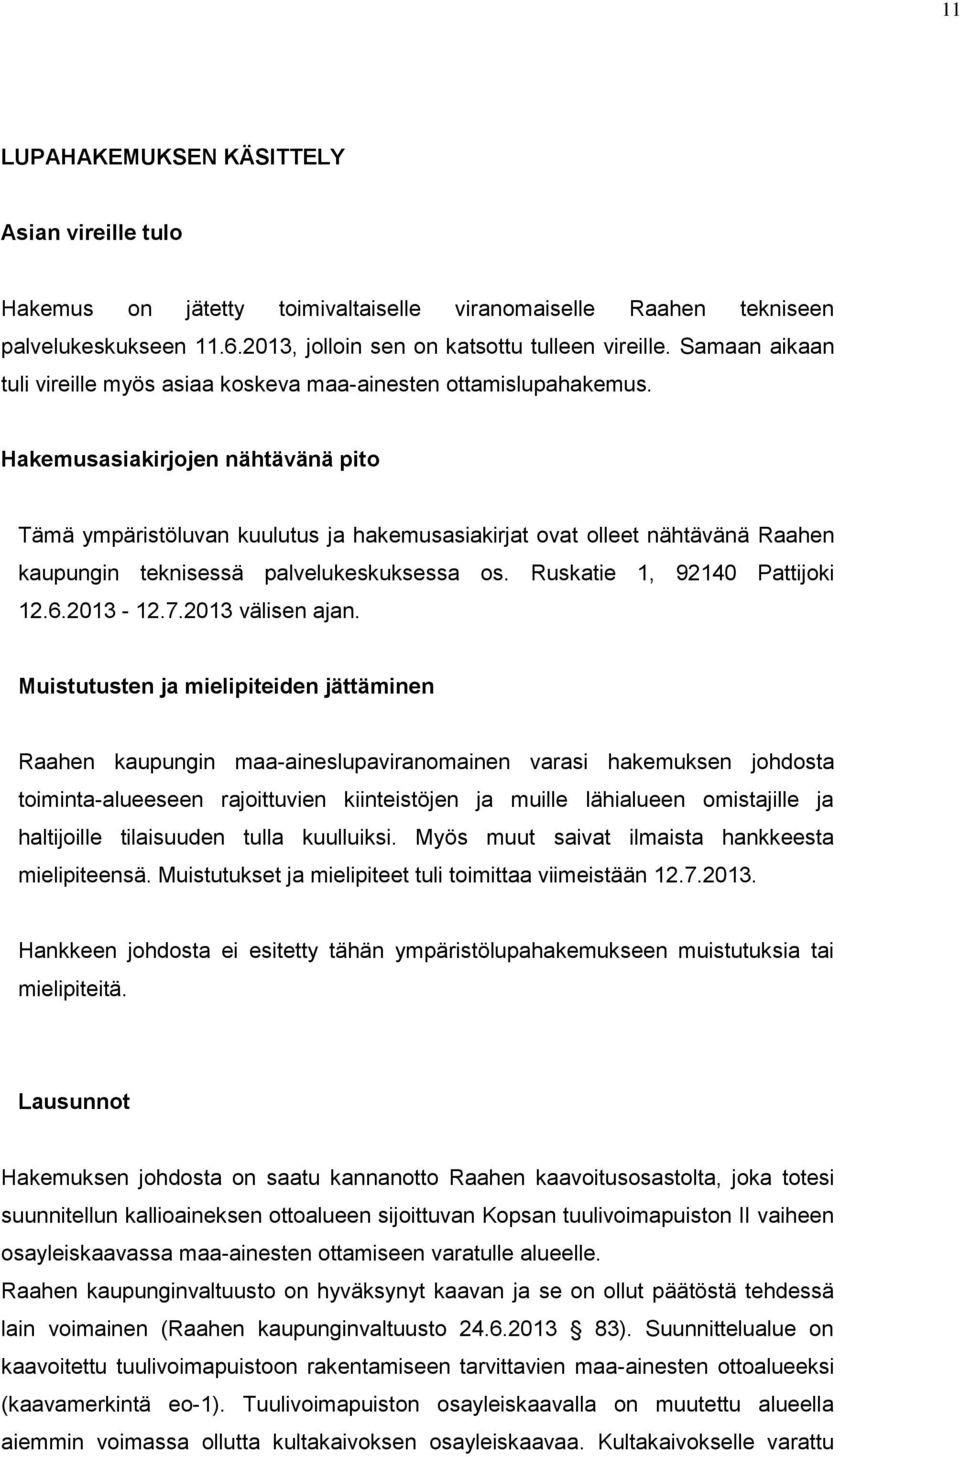 Hakemusasiakirjojen nähtävänä pito Tämä ympäristöluvan kuulutus ja hakemusasiakirjat ovat olleet nähtävänä Raahen kaupungin teknisessä palvelukeskuksessa os. Ruskatie 1, 92140 Pattijoki 12.6.2013-12.